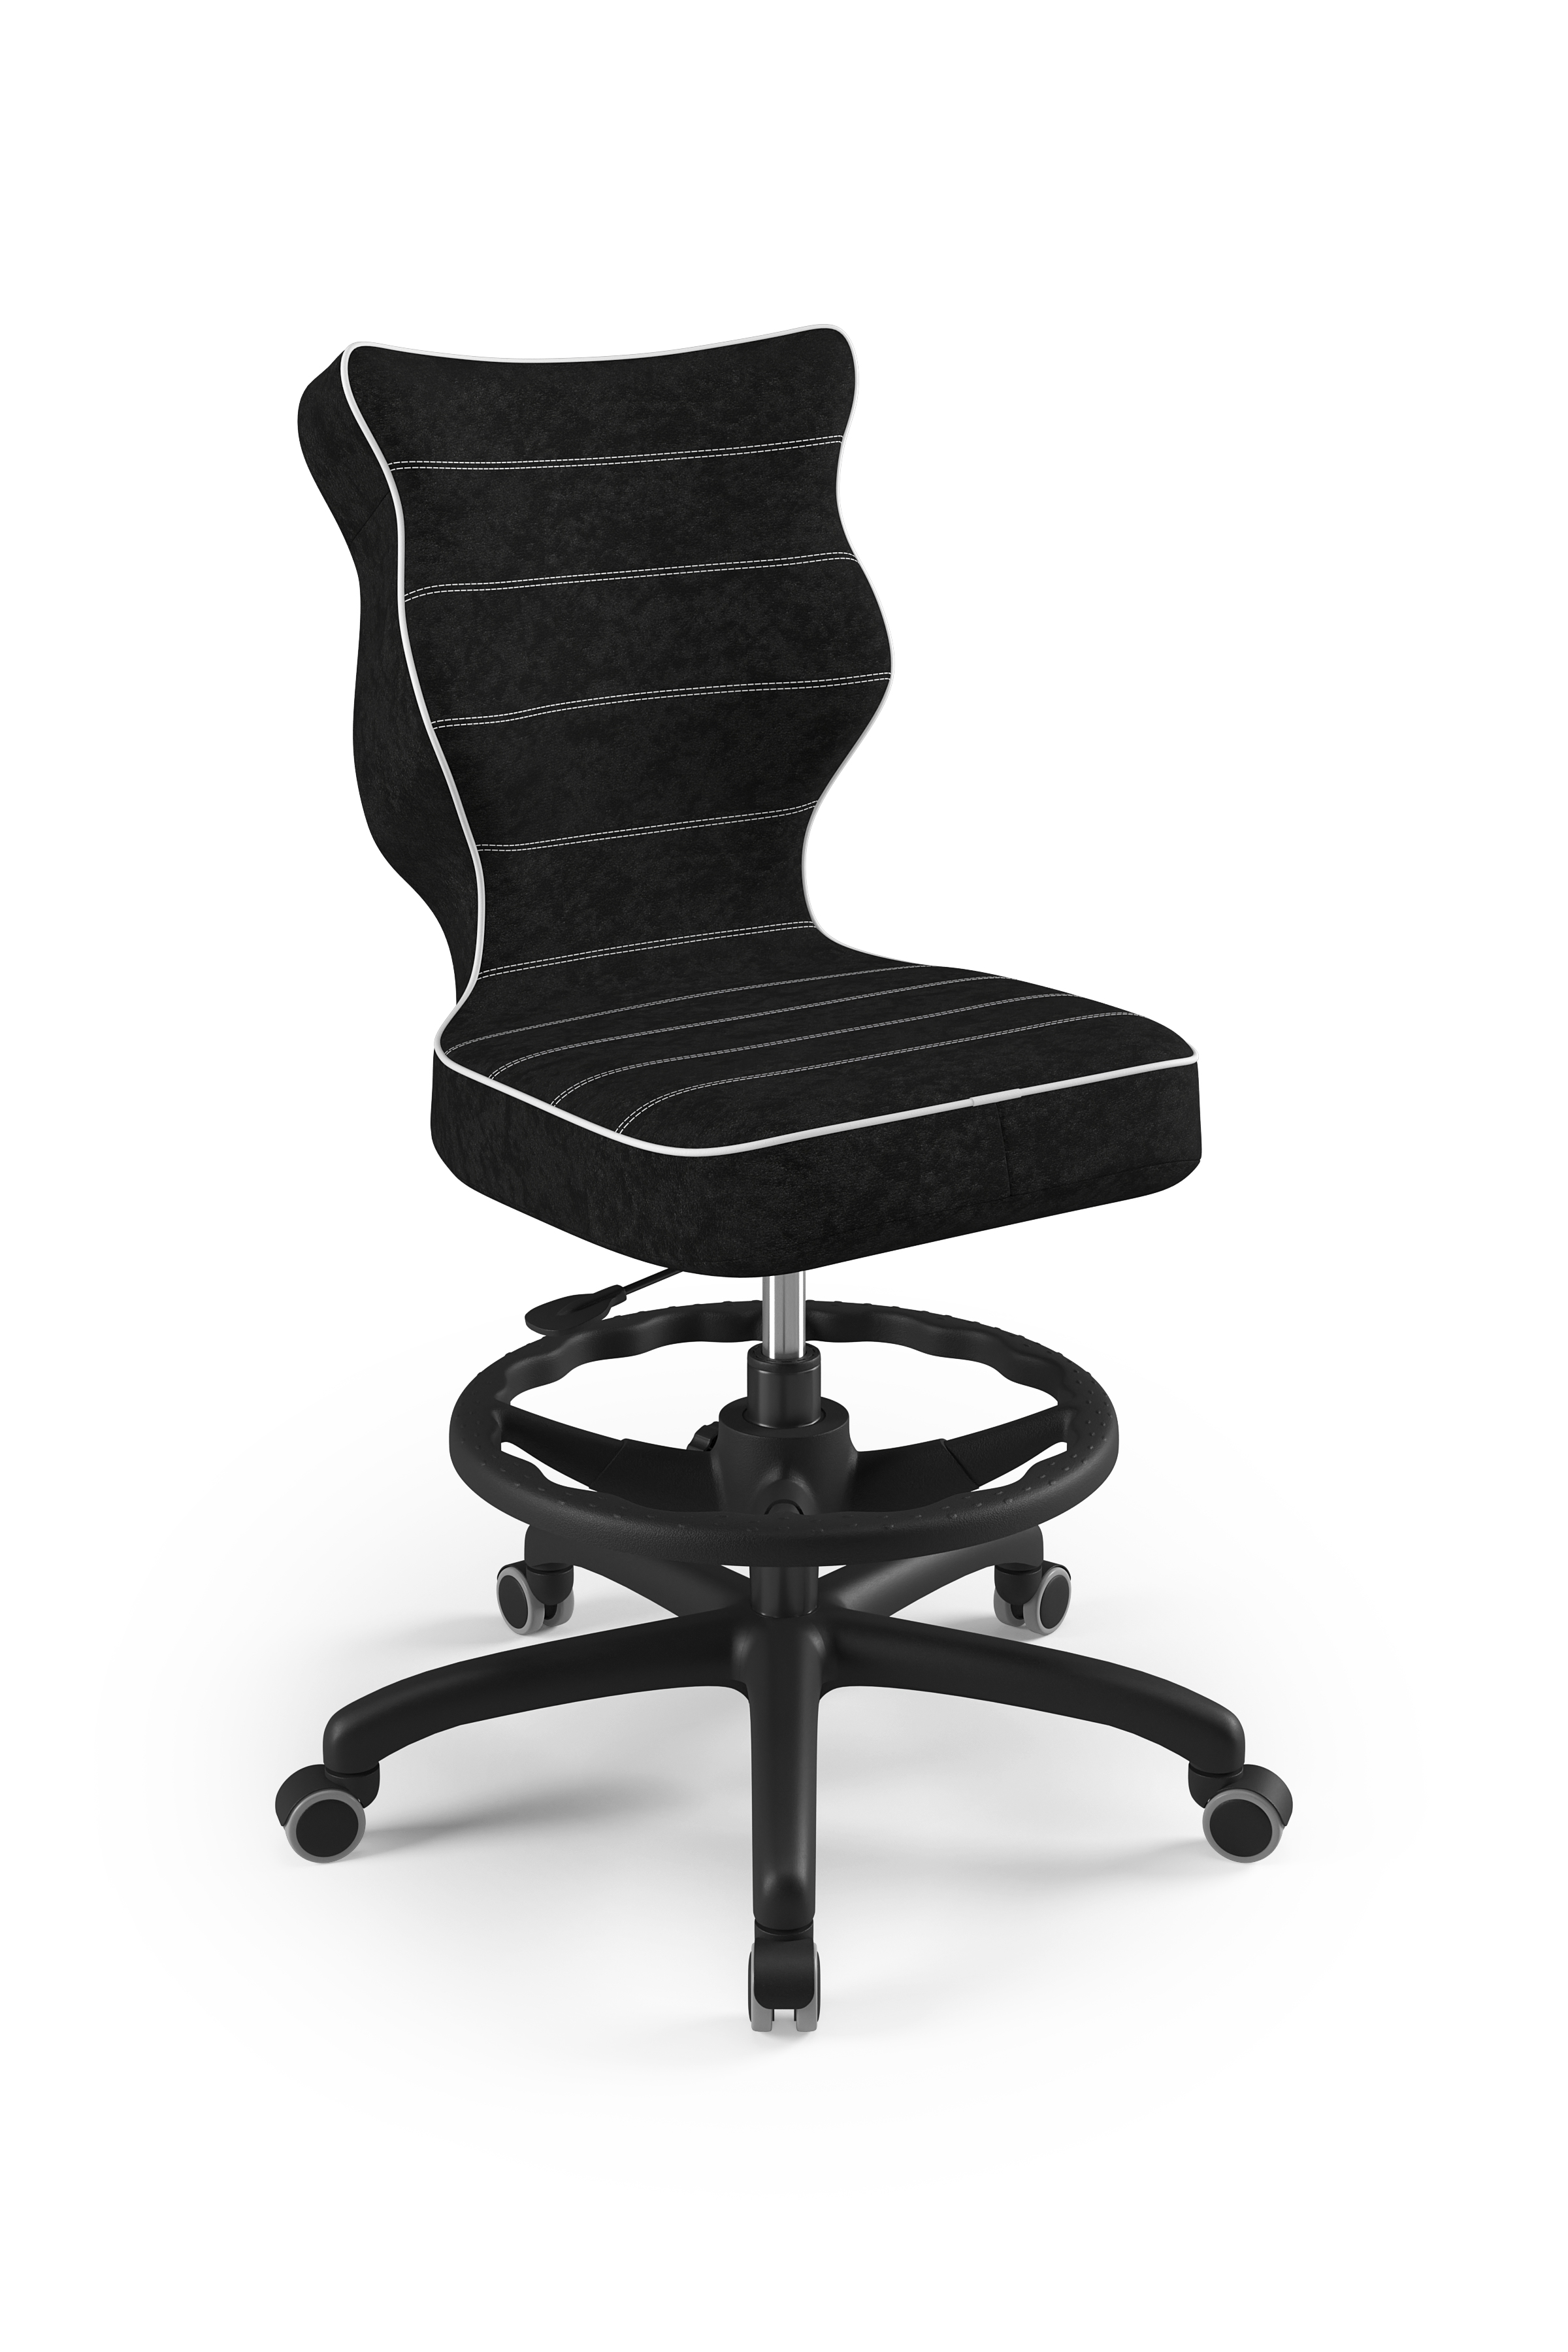 Krzesło młodzieżowe Petit czarny Visto 01 rozmiar 5 WK+P